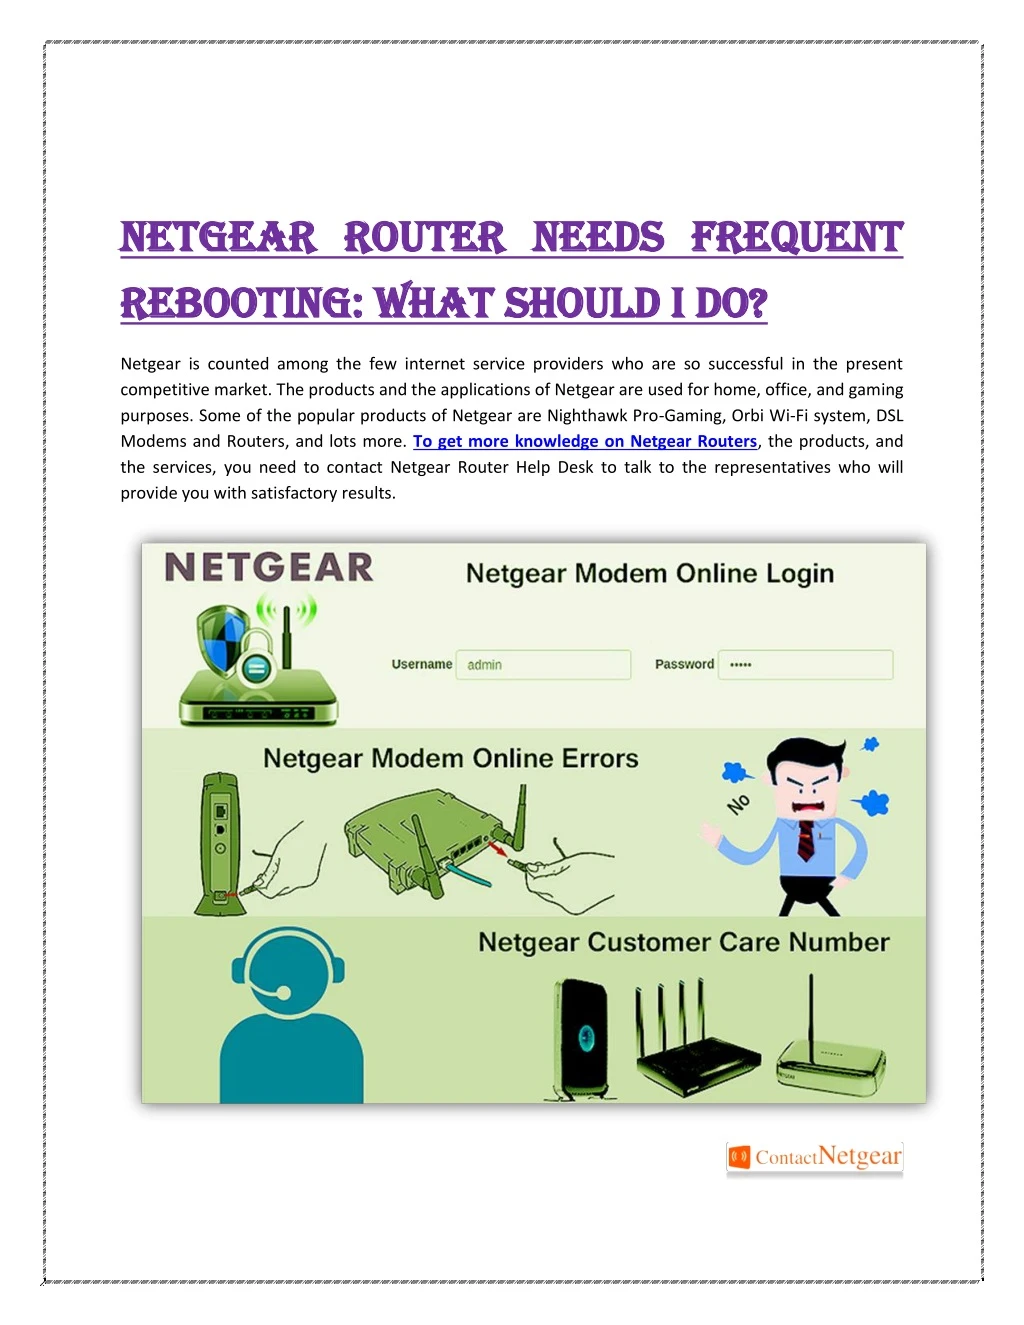 netgear router needs frequent netgear router